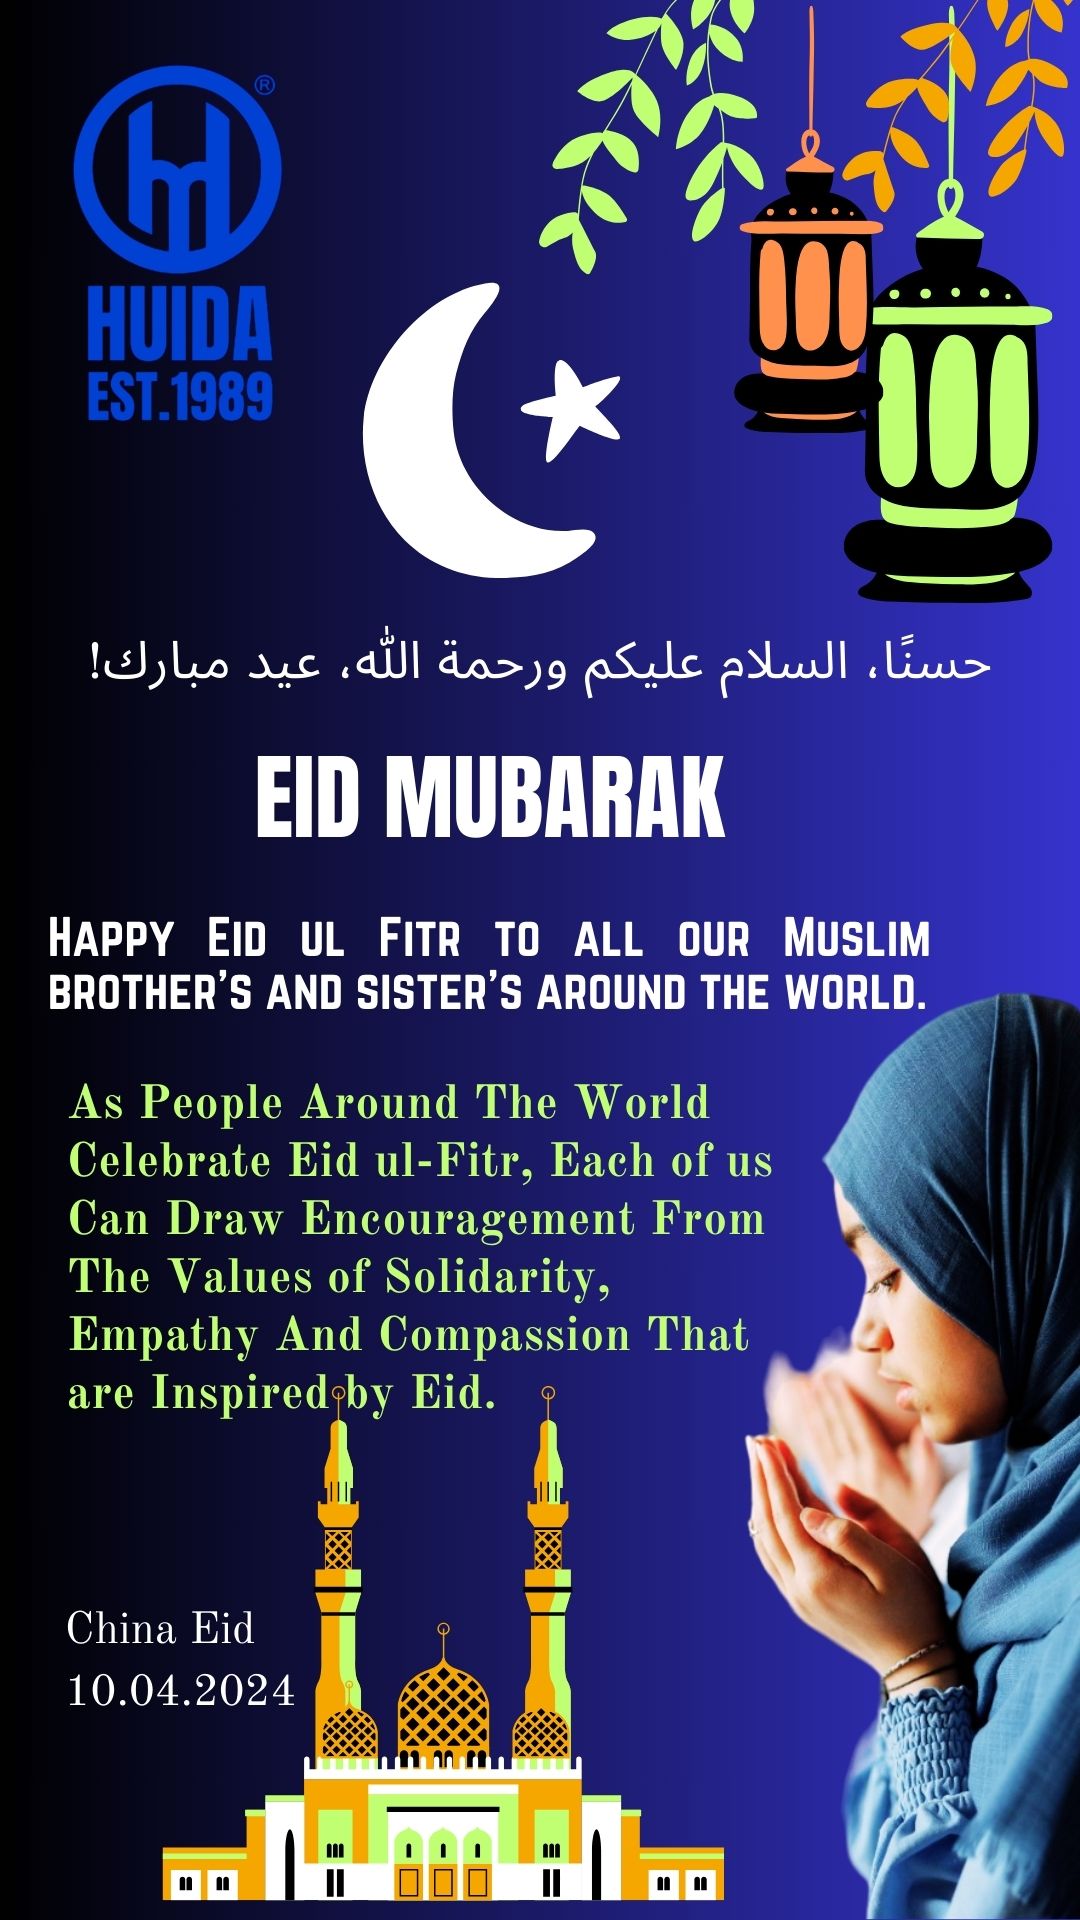 祝世界各地所有穆斯林兄弟姐妹开斋节快乐。